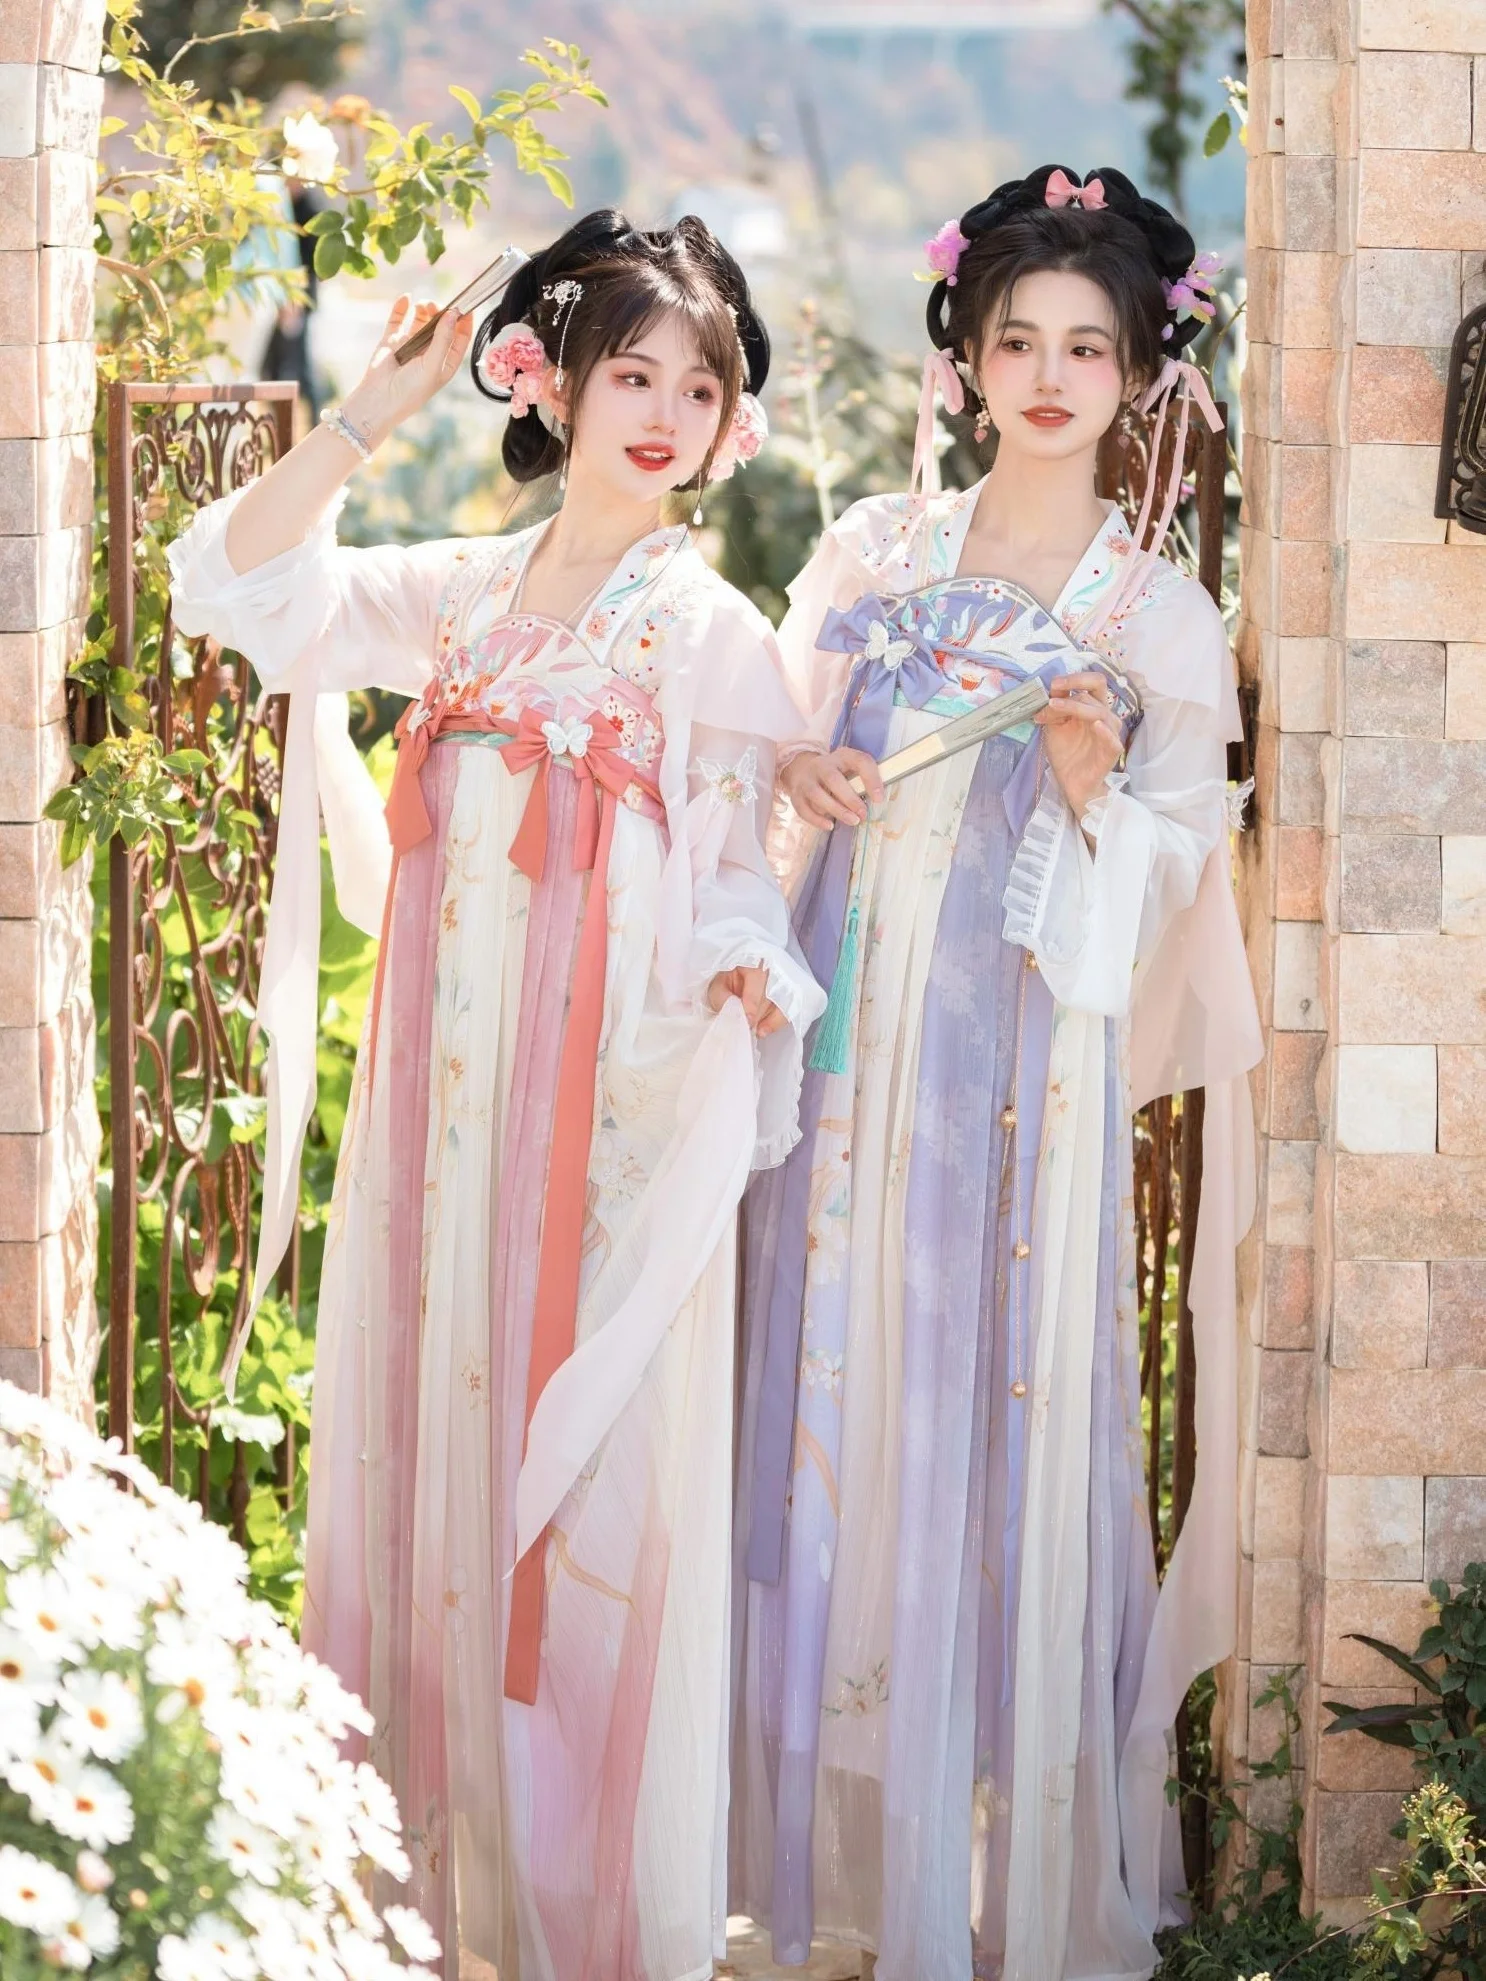 

Костюм династии ханьфу Тан Женская юбка костюм для народного танца Традиционный китайский сказочный костюм принцессы костюм для выступления на сцене